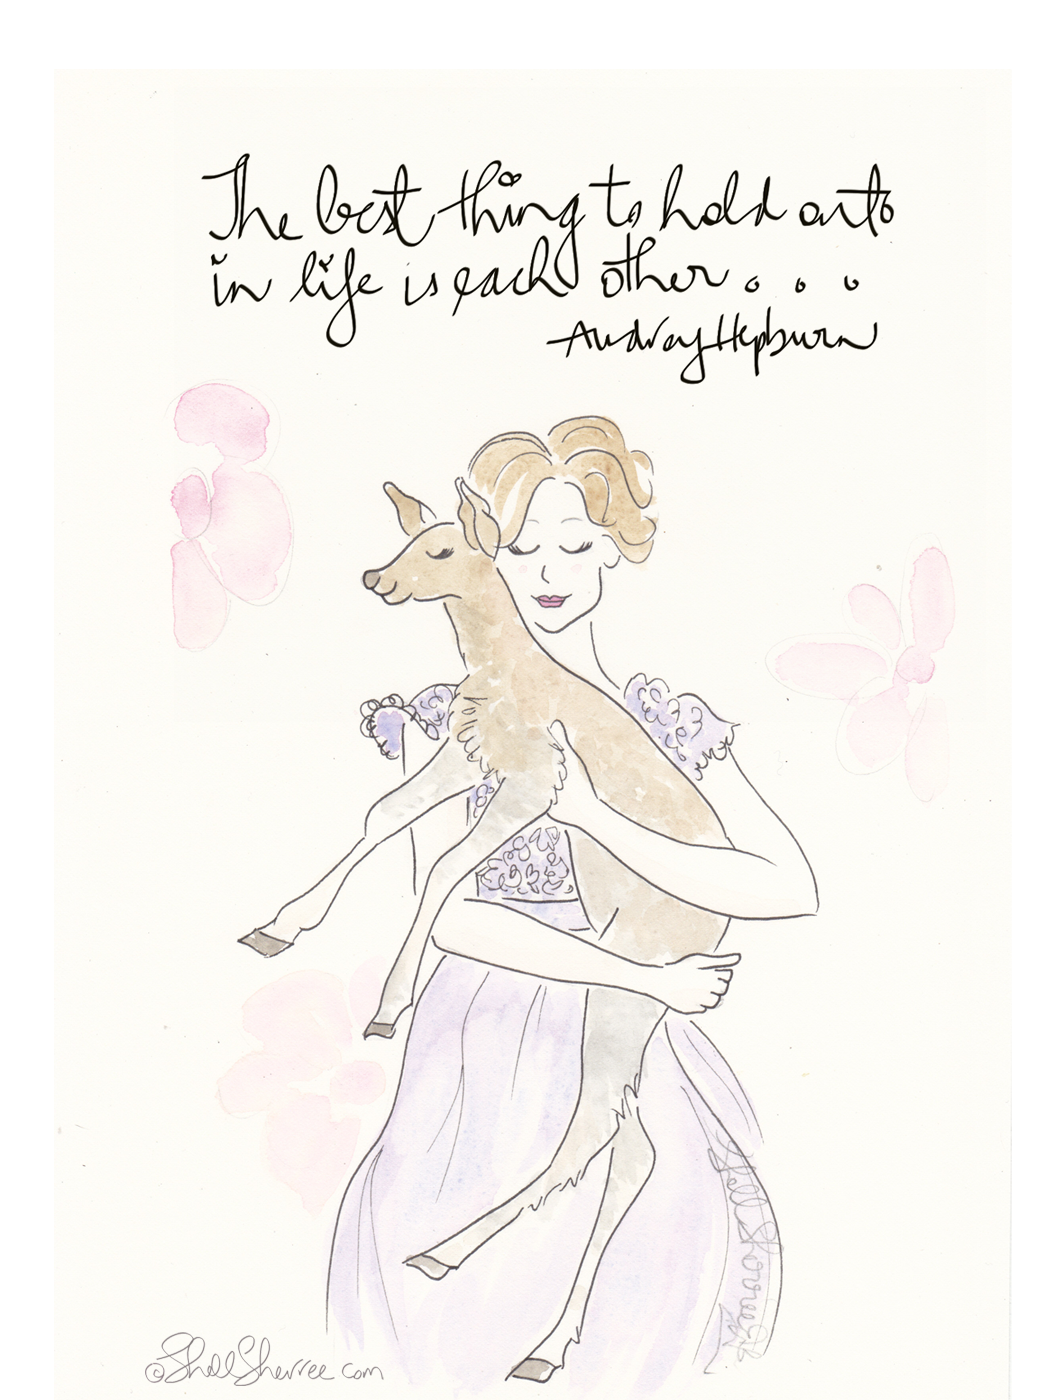 Audrey Hepburn and Dear Deer, fashion & fluffballs illustration © Shell-Sherree